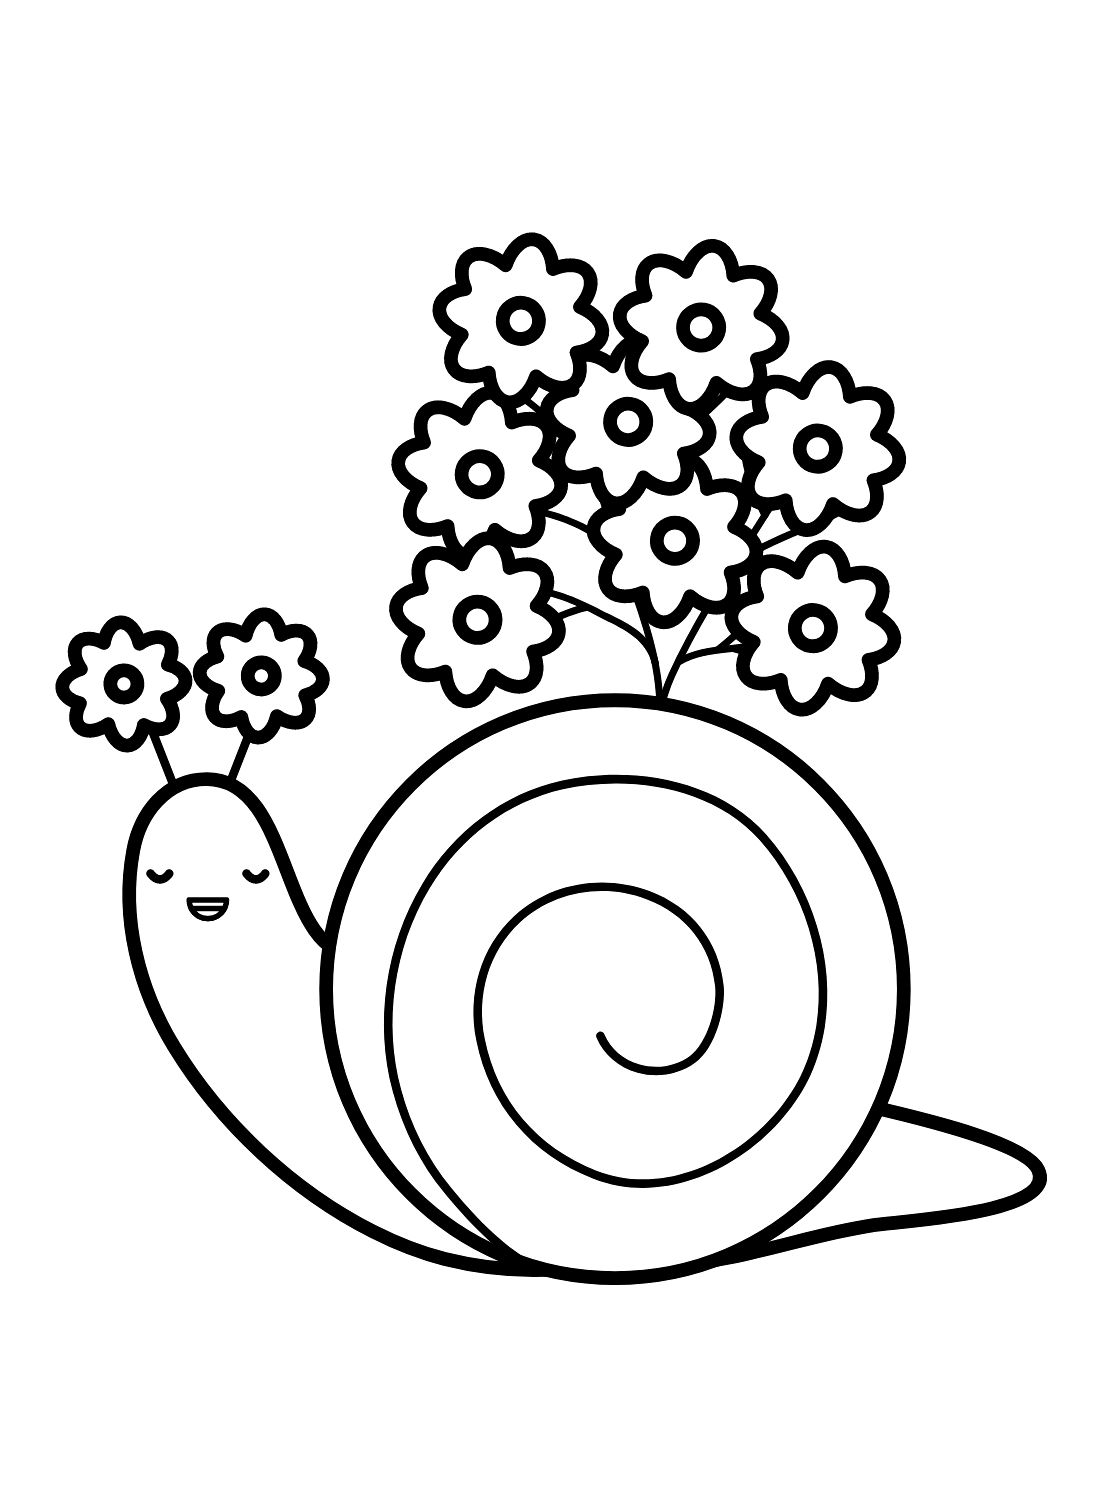 可爱的蜗牛与蜗牛的花